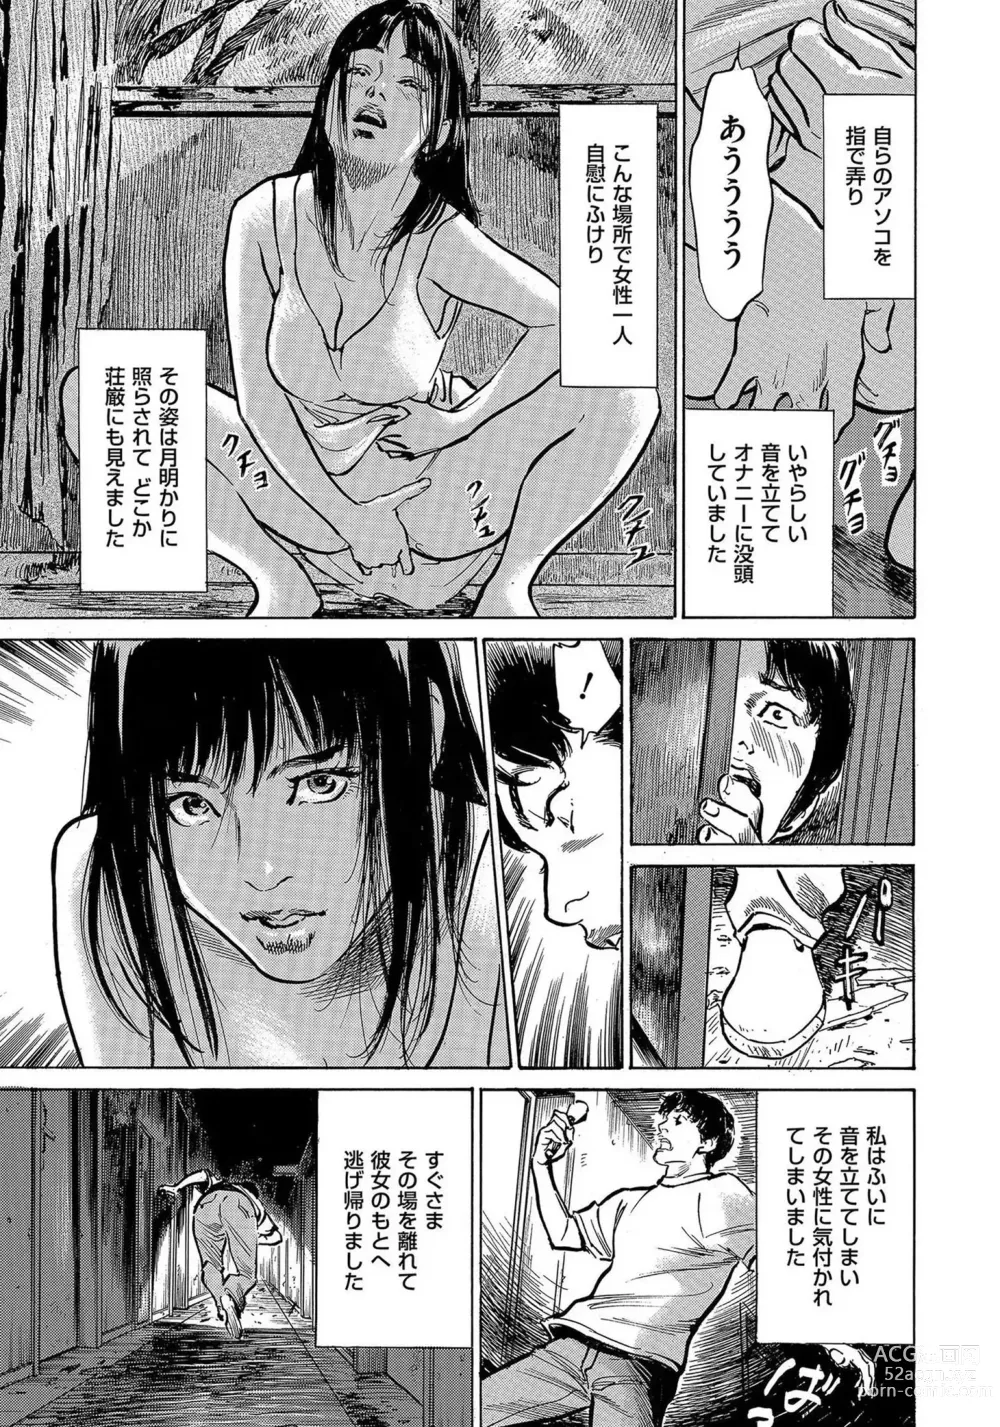 Page 24 of manga Saikou ni Toroketa Honki de Honto no Hanashi 16 episodes